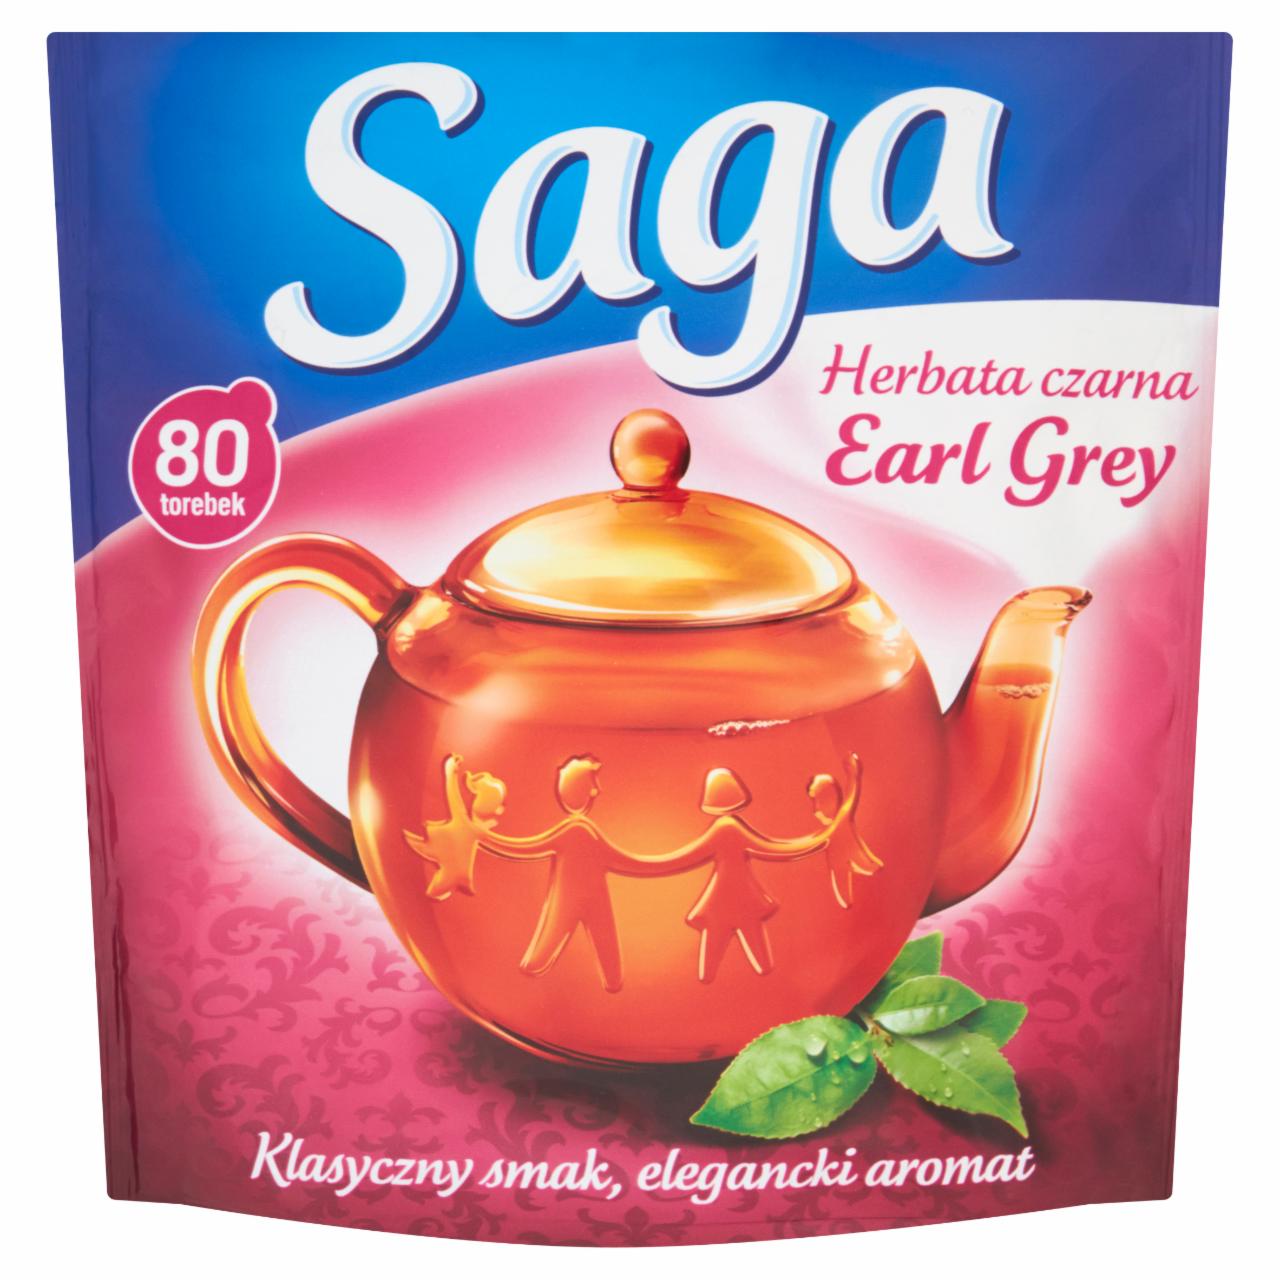 Zdjęcia - Saga Earl Grey Herbata czarna 120 g (80 torebek)